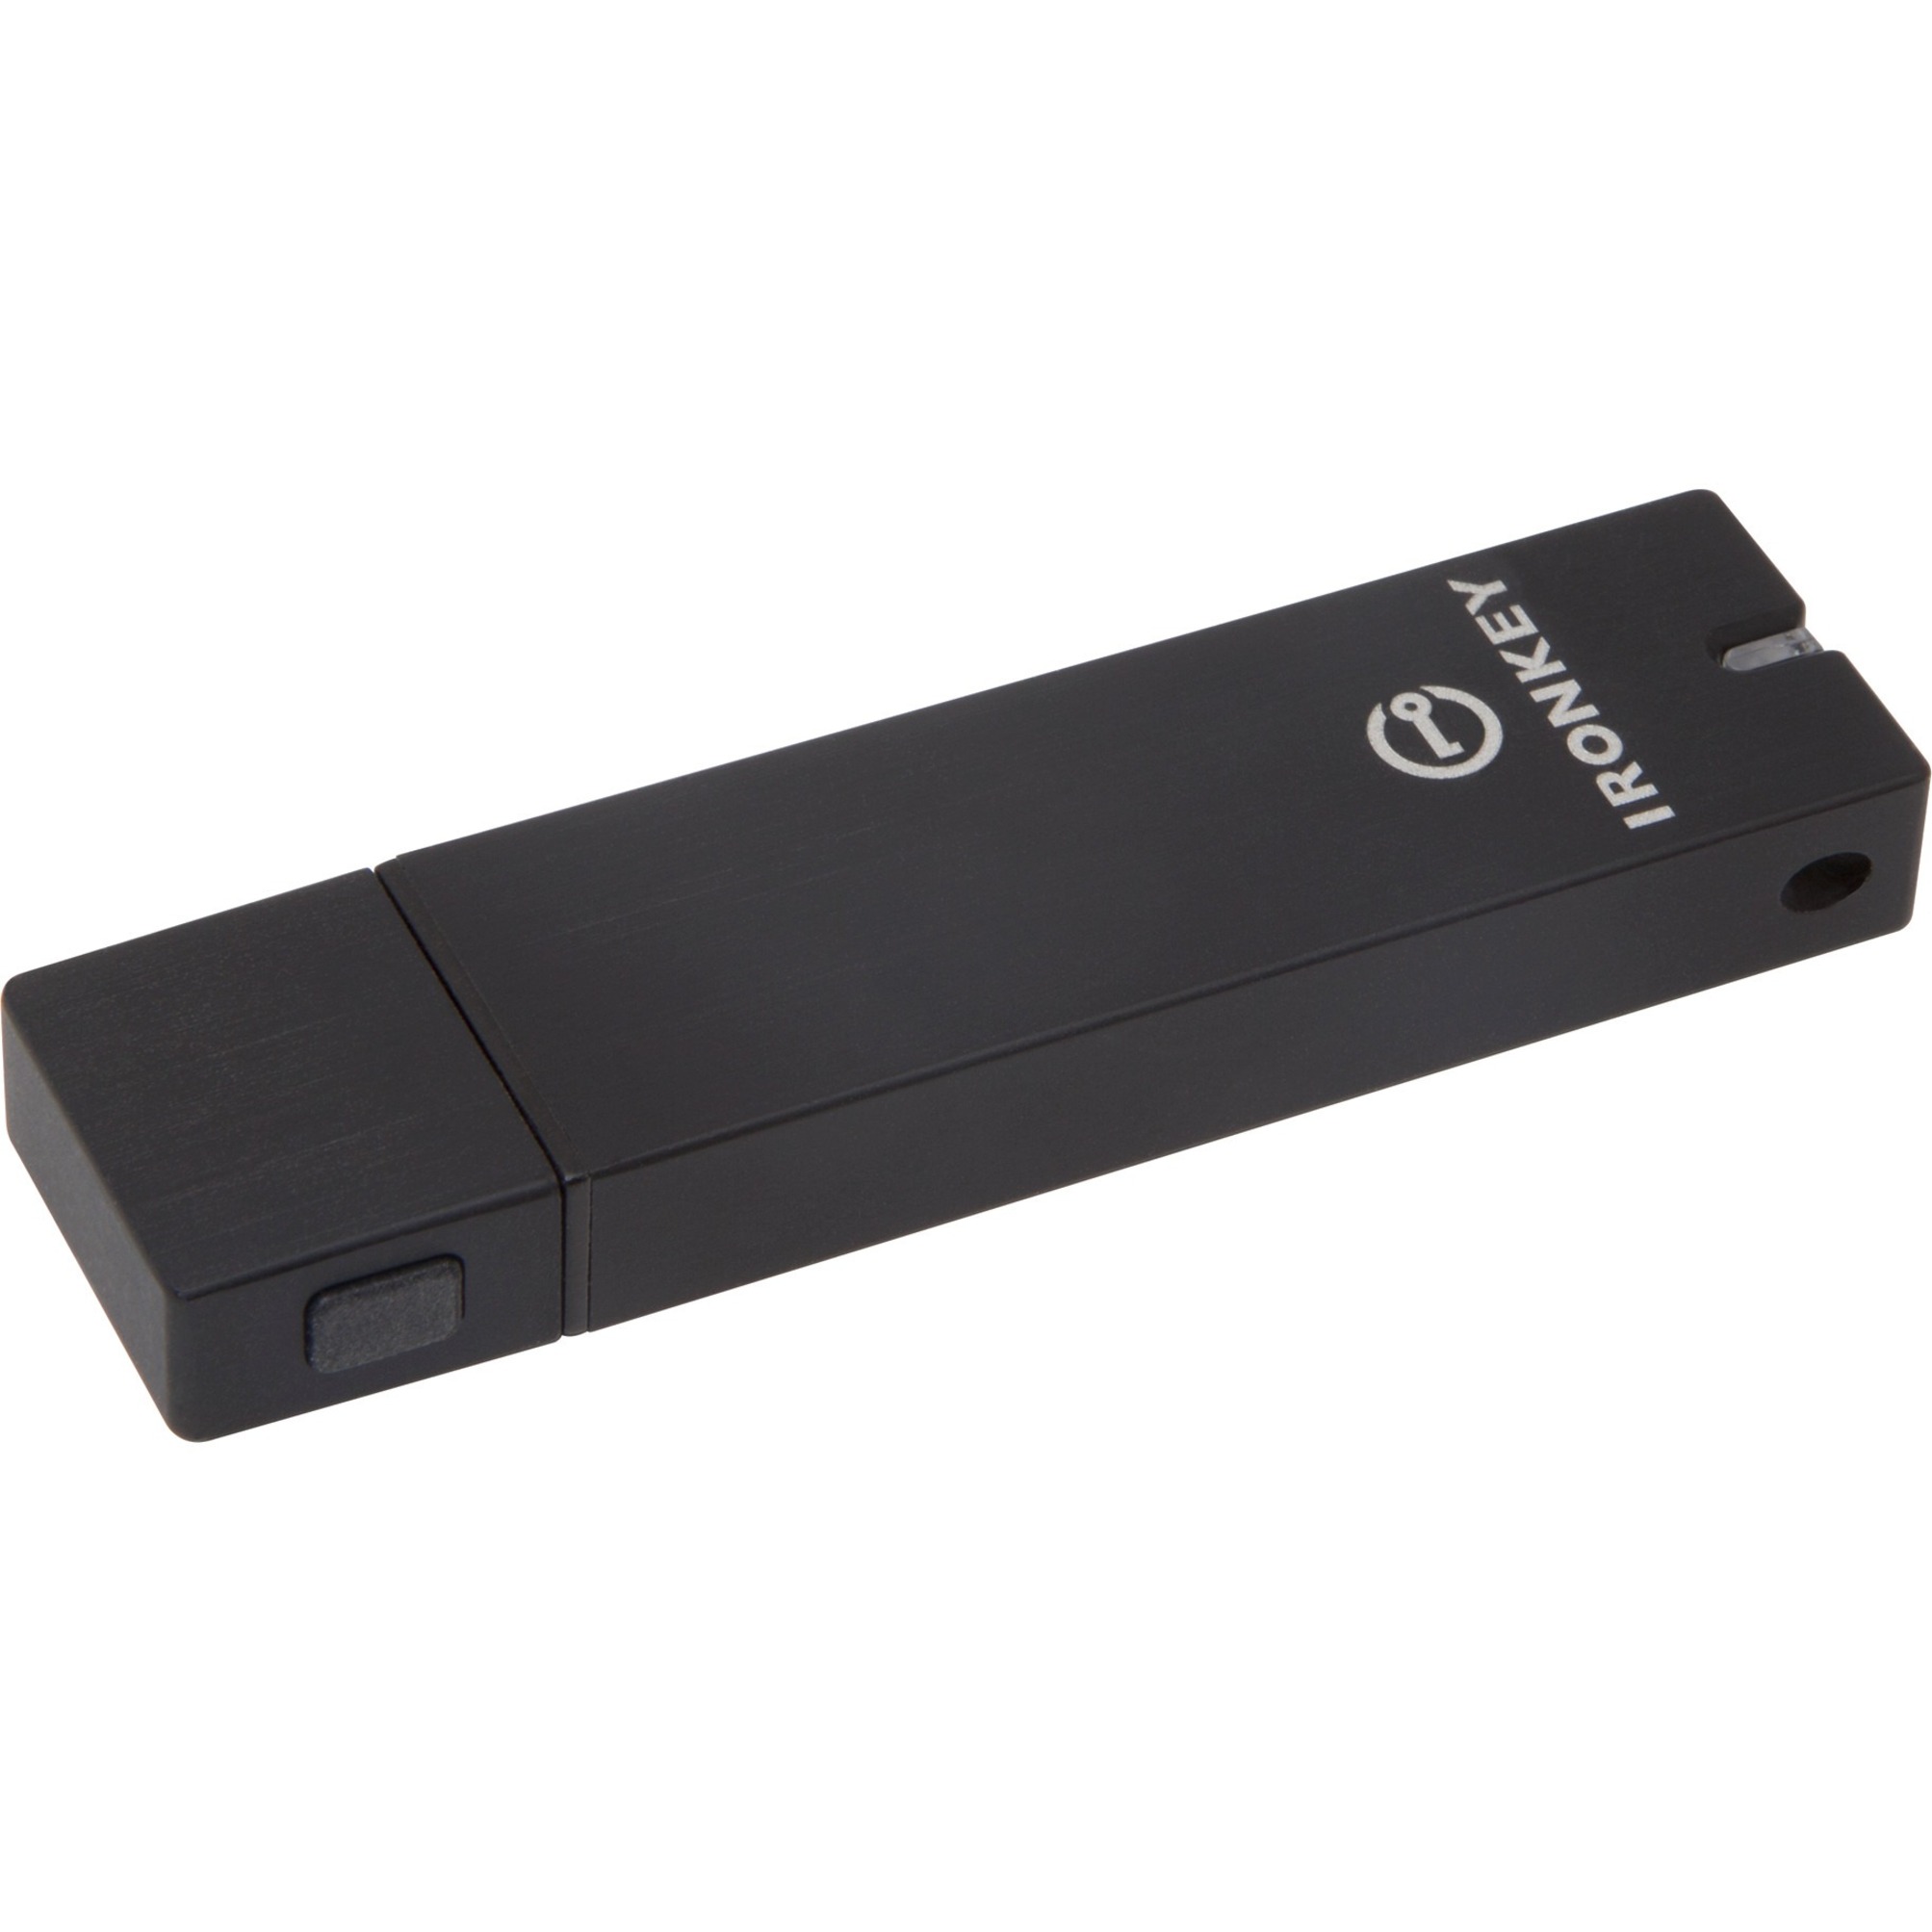 IronKey 2GB Basic S250 USB 2.0 Flash Drive - image 1 of 4